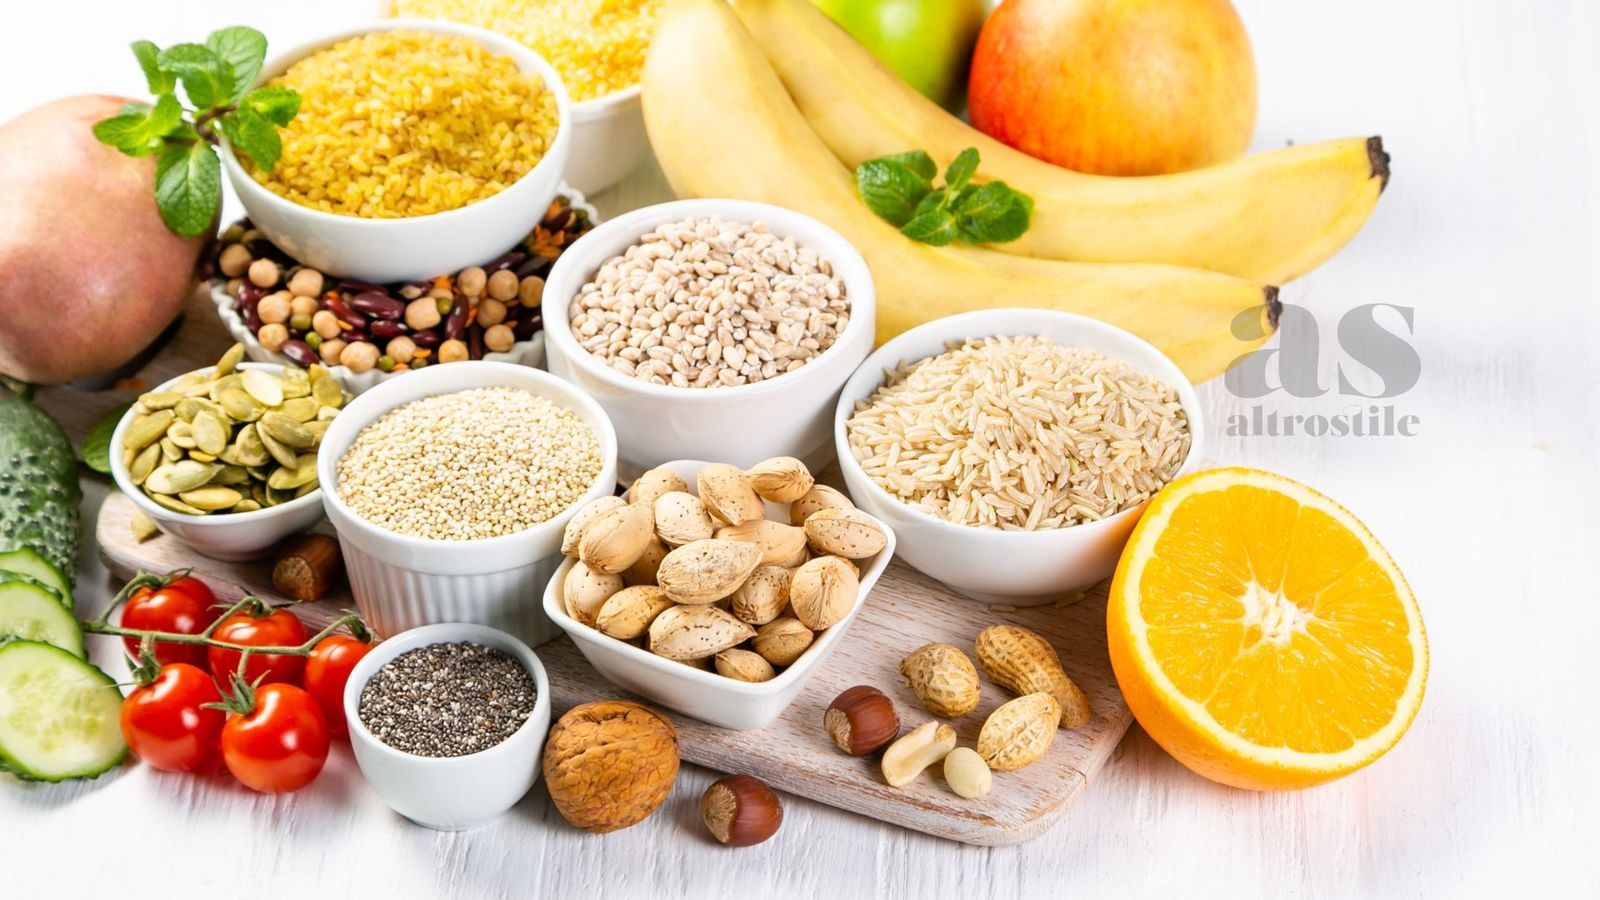 AltroStile • Micronutrienti: fondamentali per salute dell'organismo